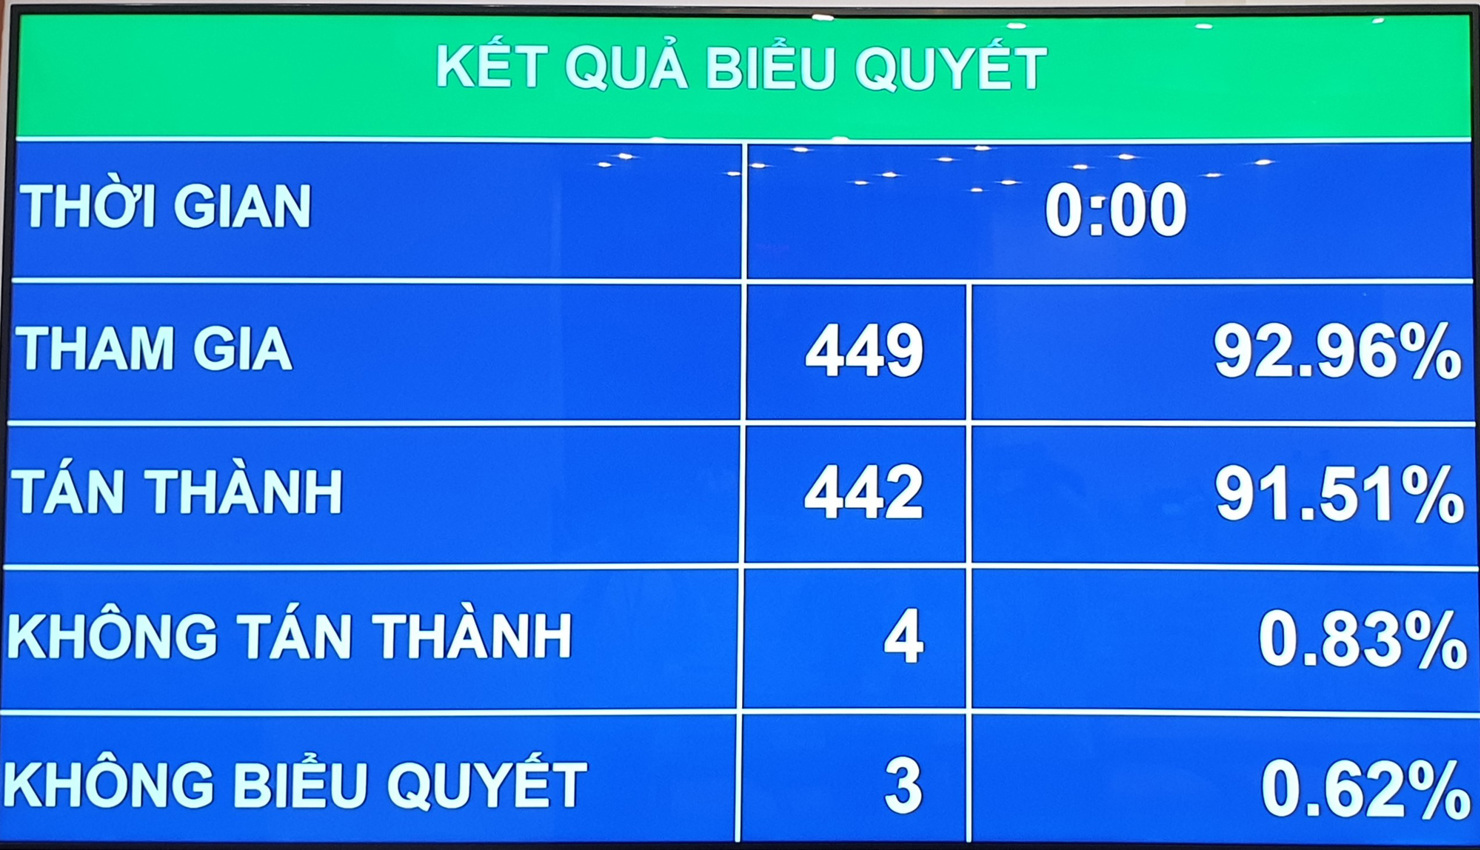 Kết quả biểu quyết thông qua Nghị quyết về một số cơ chế, chính sách tài chính - ngân sách đặc thù đối với Thủ đô Hà Nội. Nguồn: internet